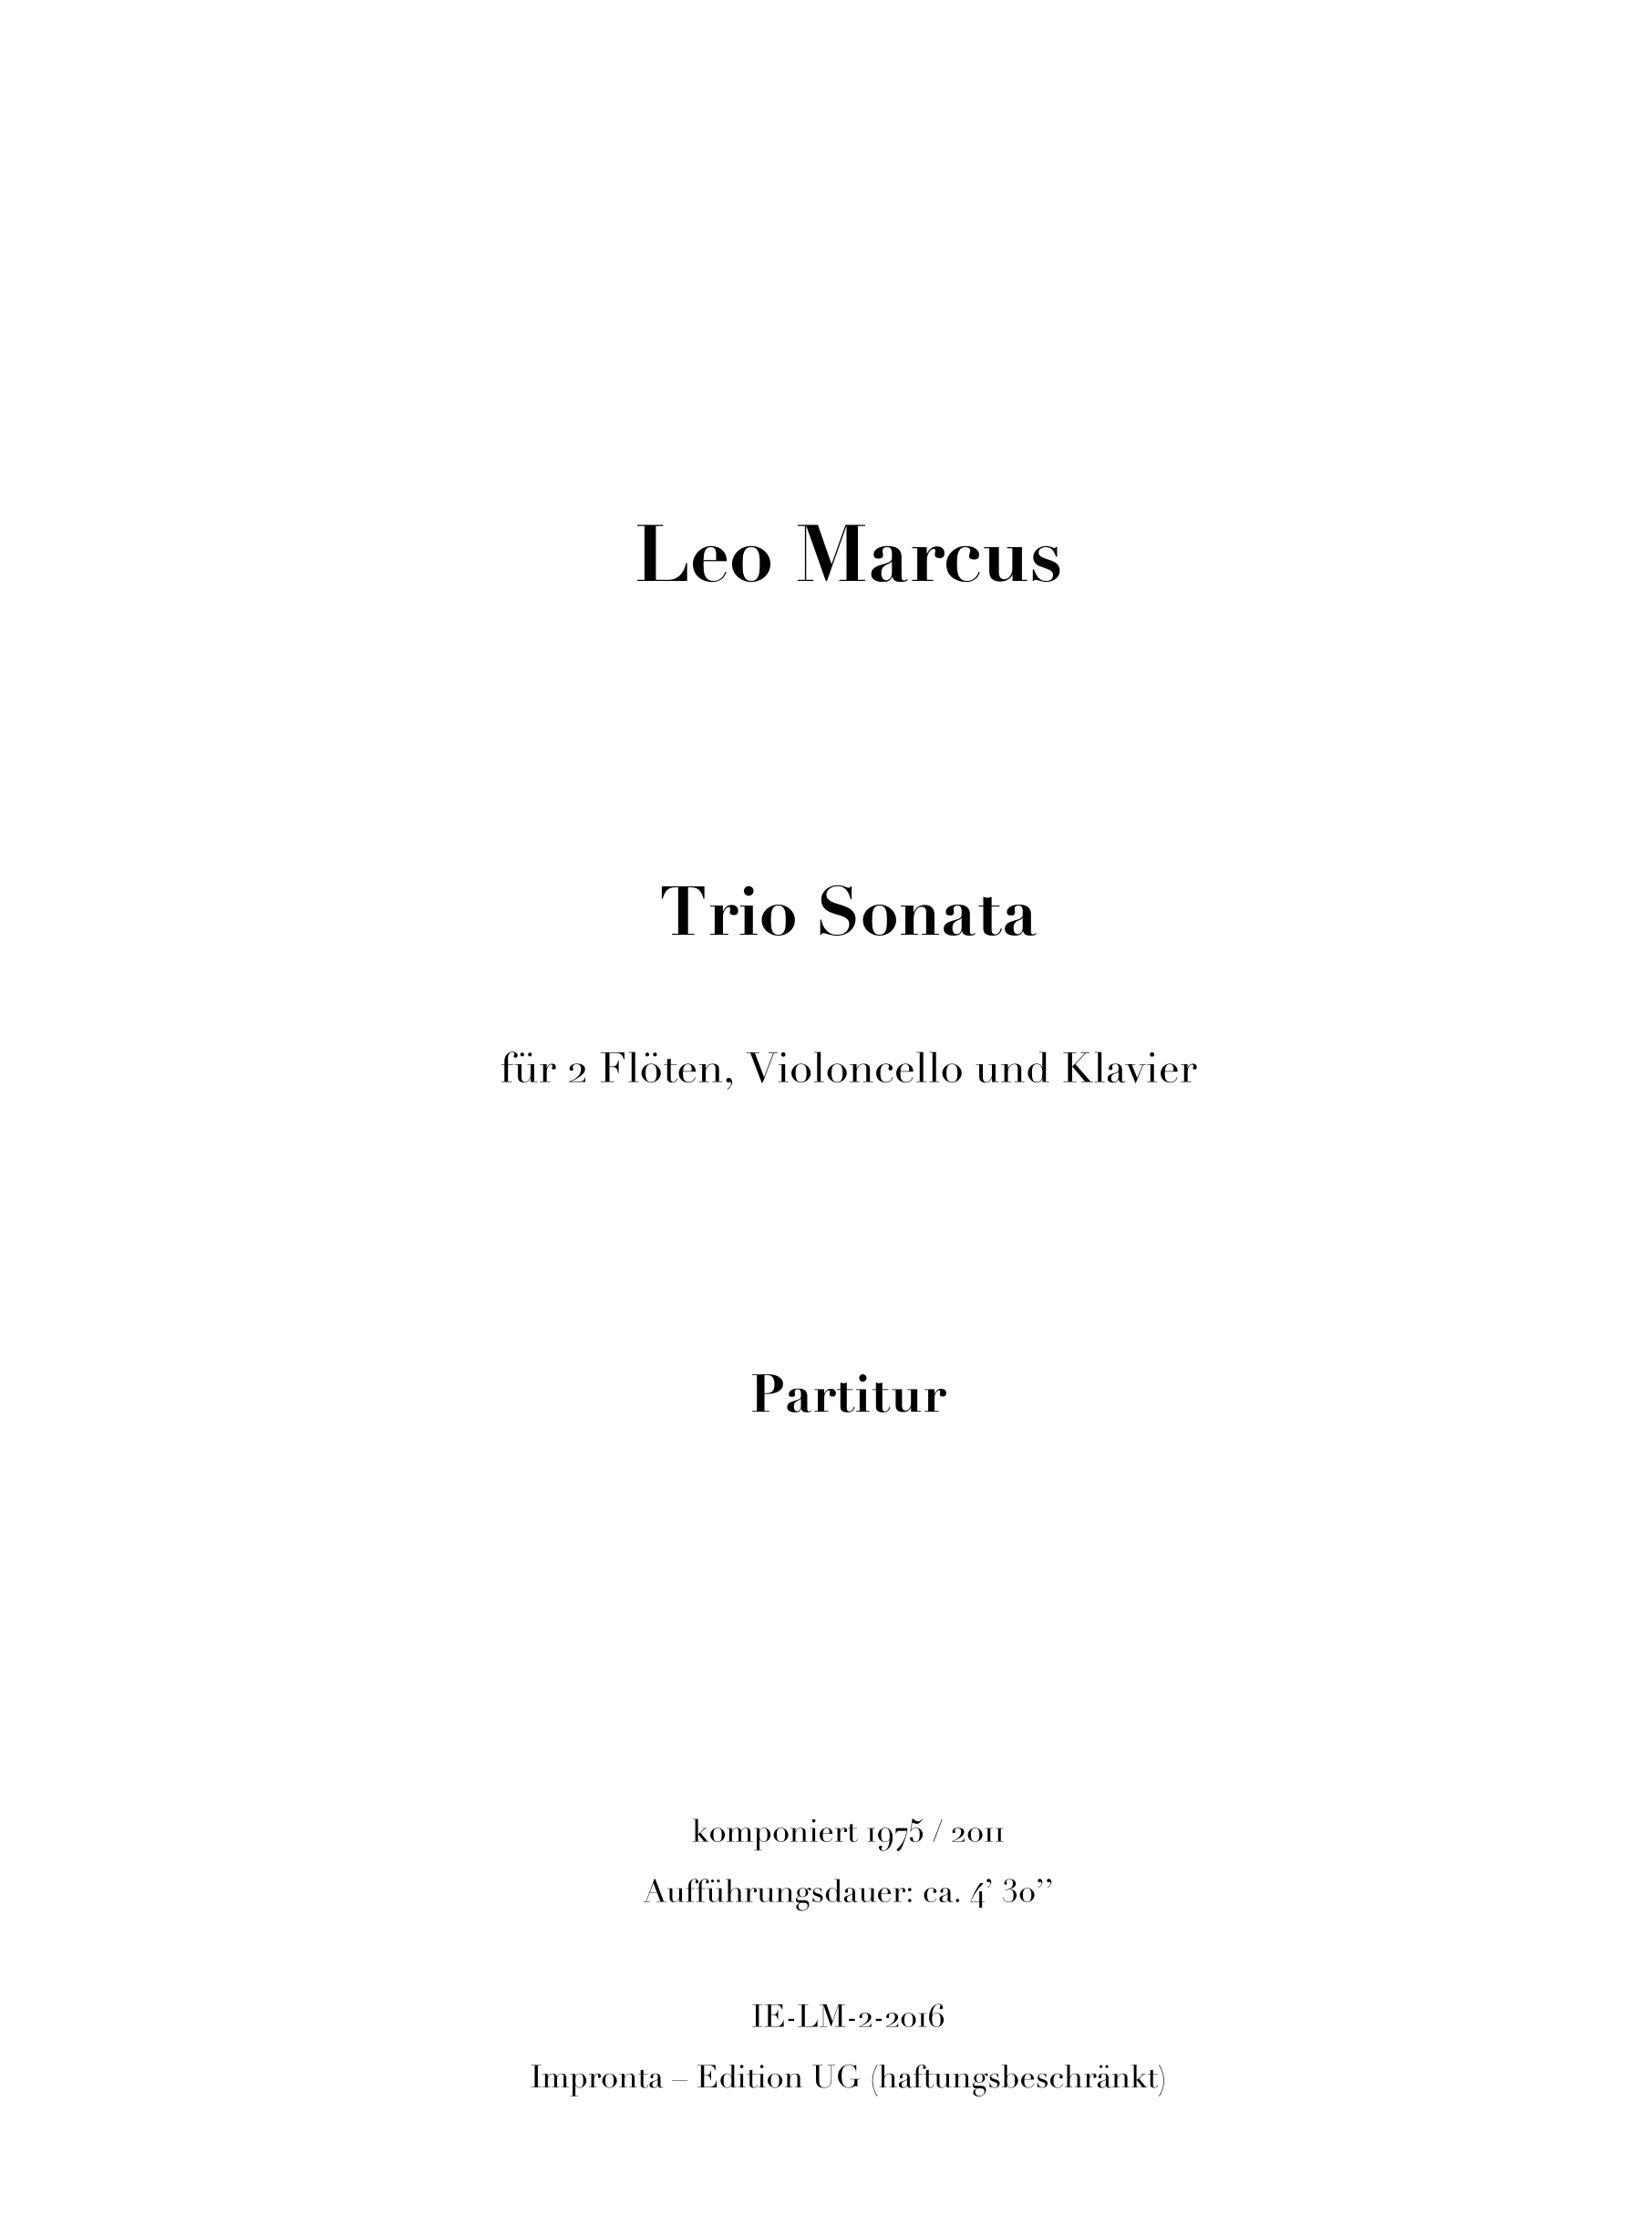 161028 Marcus Trio Sonata Partitur KOMPLETT 230_310 1